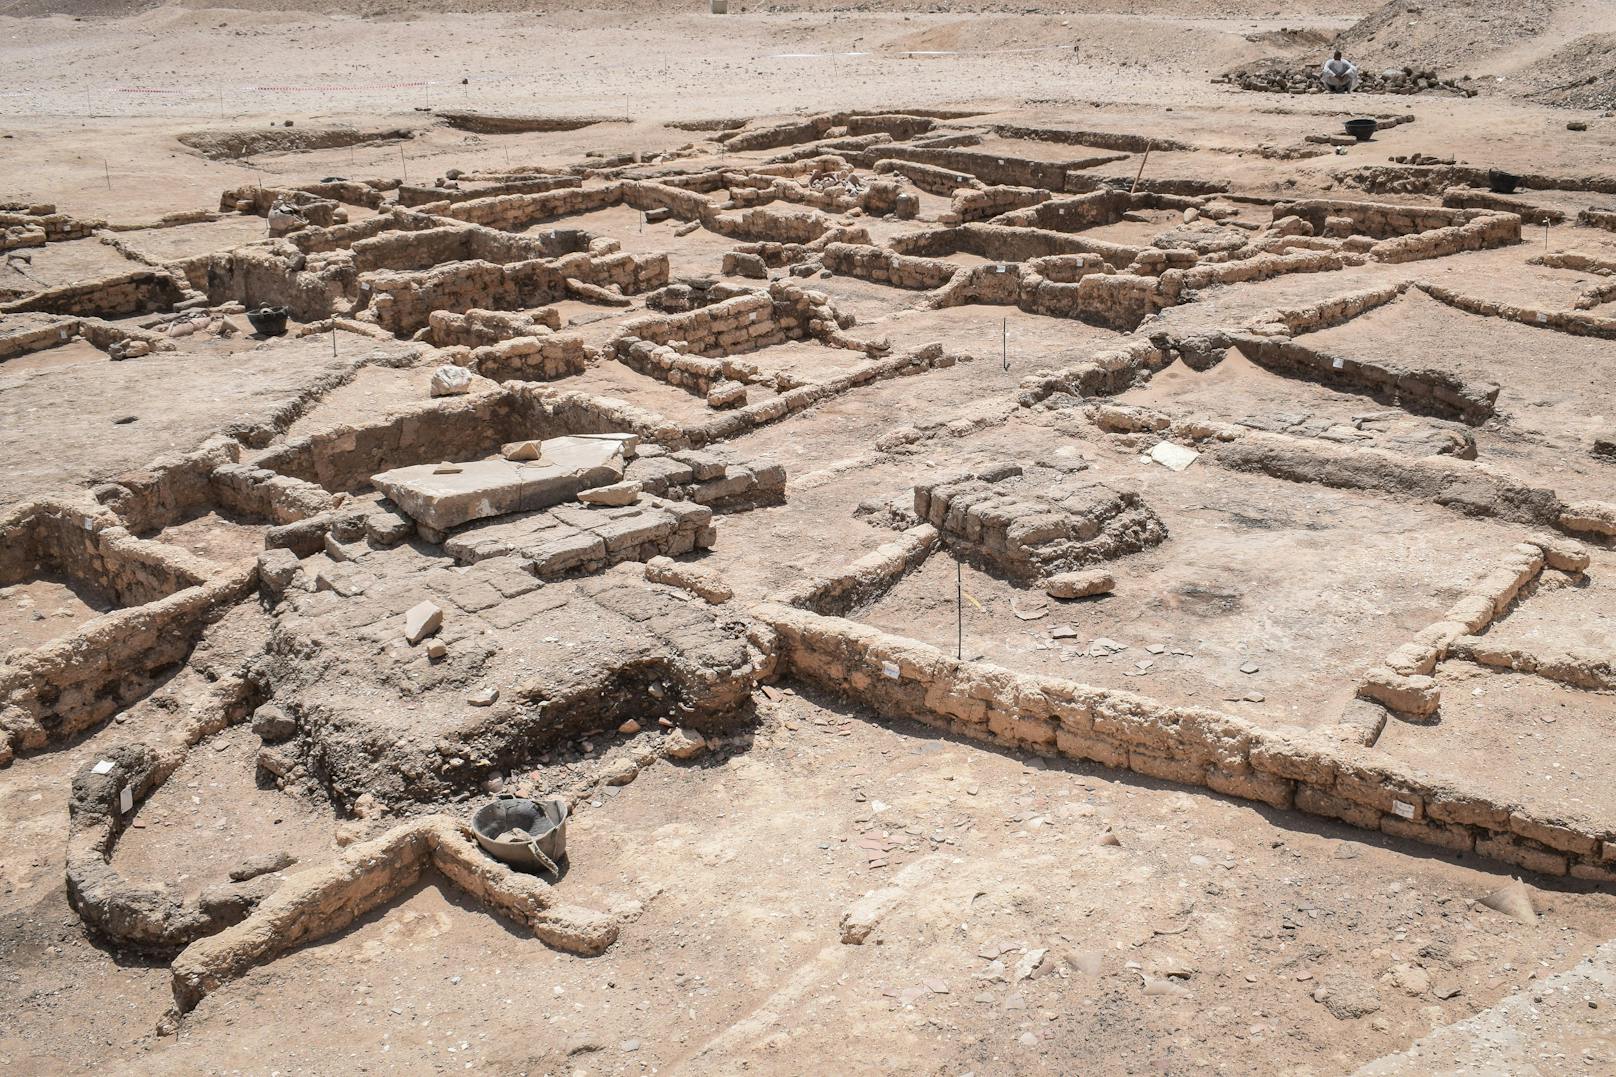 Forscher entdecken "verlorene Stadt" in Ägypten: Die Bilder zeigen die 3.000 Jahre alte Ausgrabungsstädte.